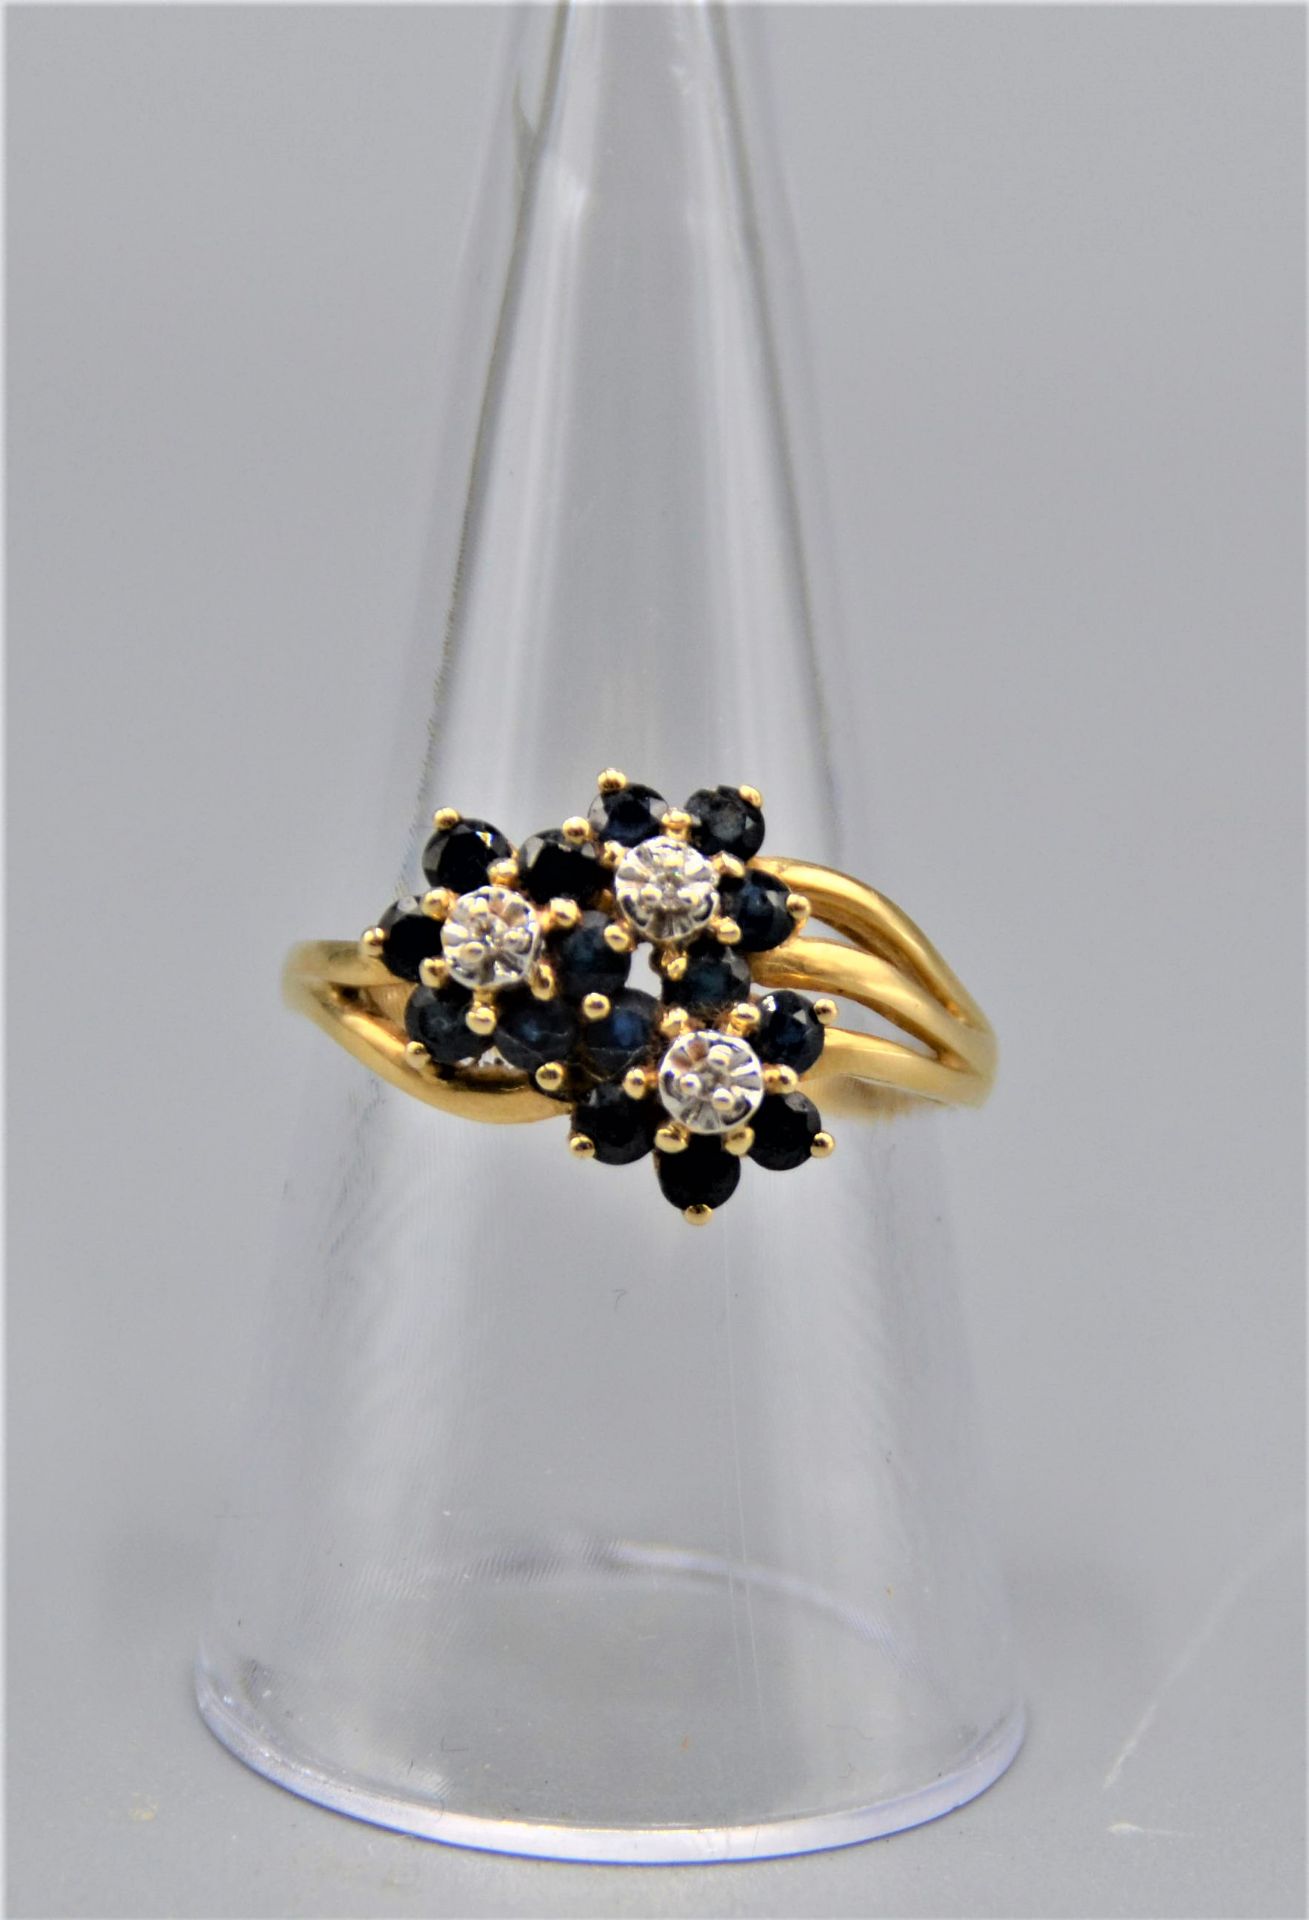 Goldring 585 mit Saphiren Diamanten Blütenform 2,9g Ø 18mm